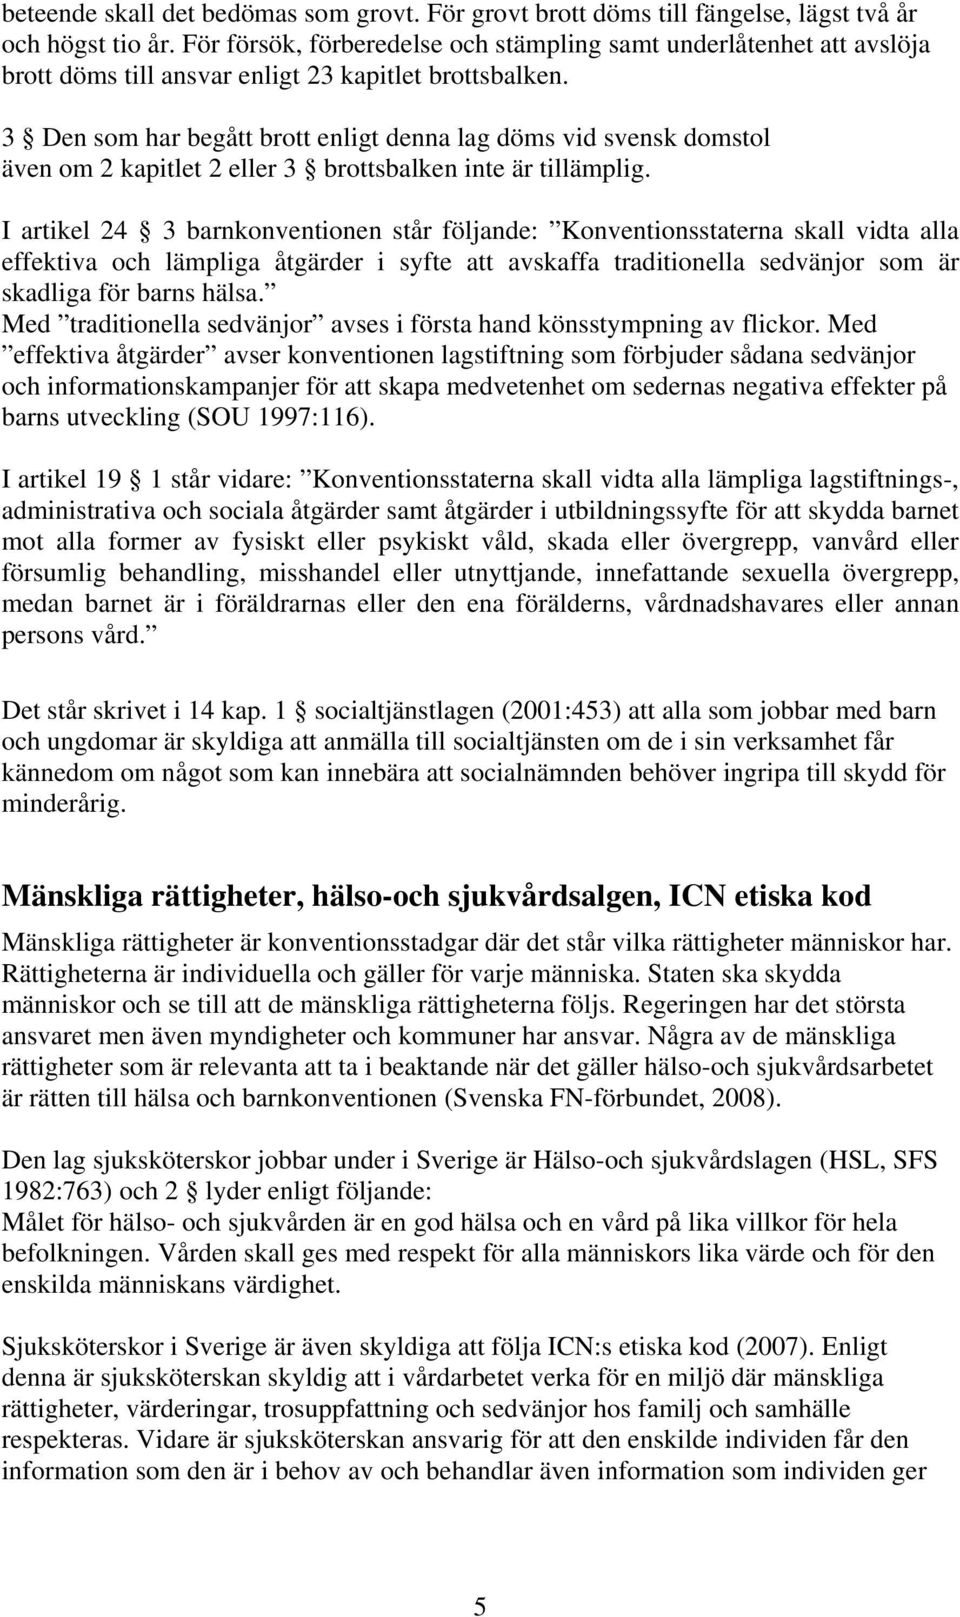 3 Den som har begått brott enligt denna lag döms vid svensk domstol även om 2 kapitlet 2 eller 3 brottsbalken inte är tillämplig.